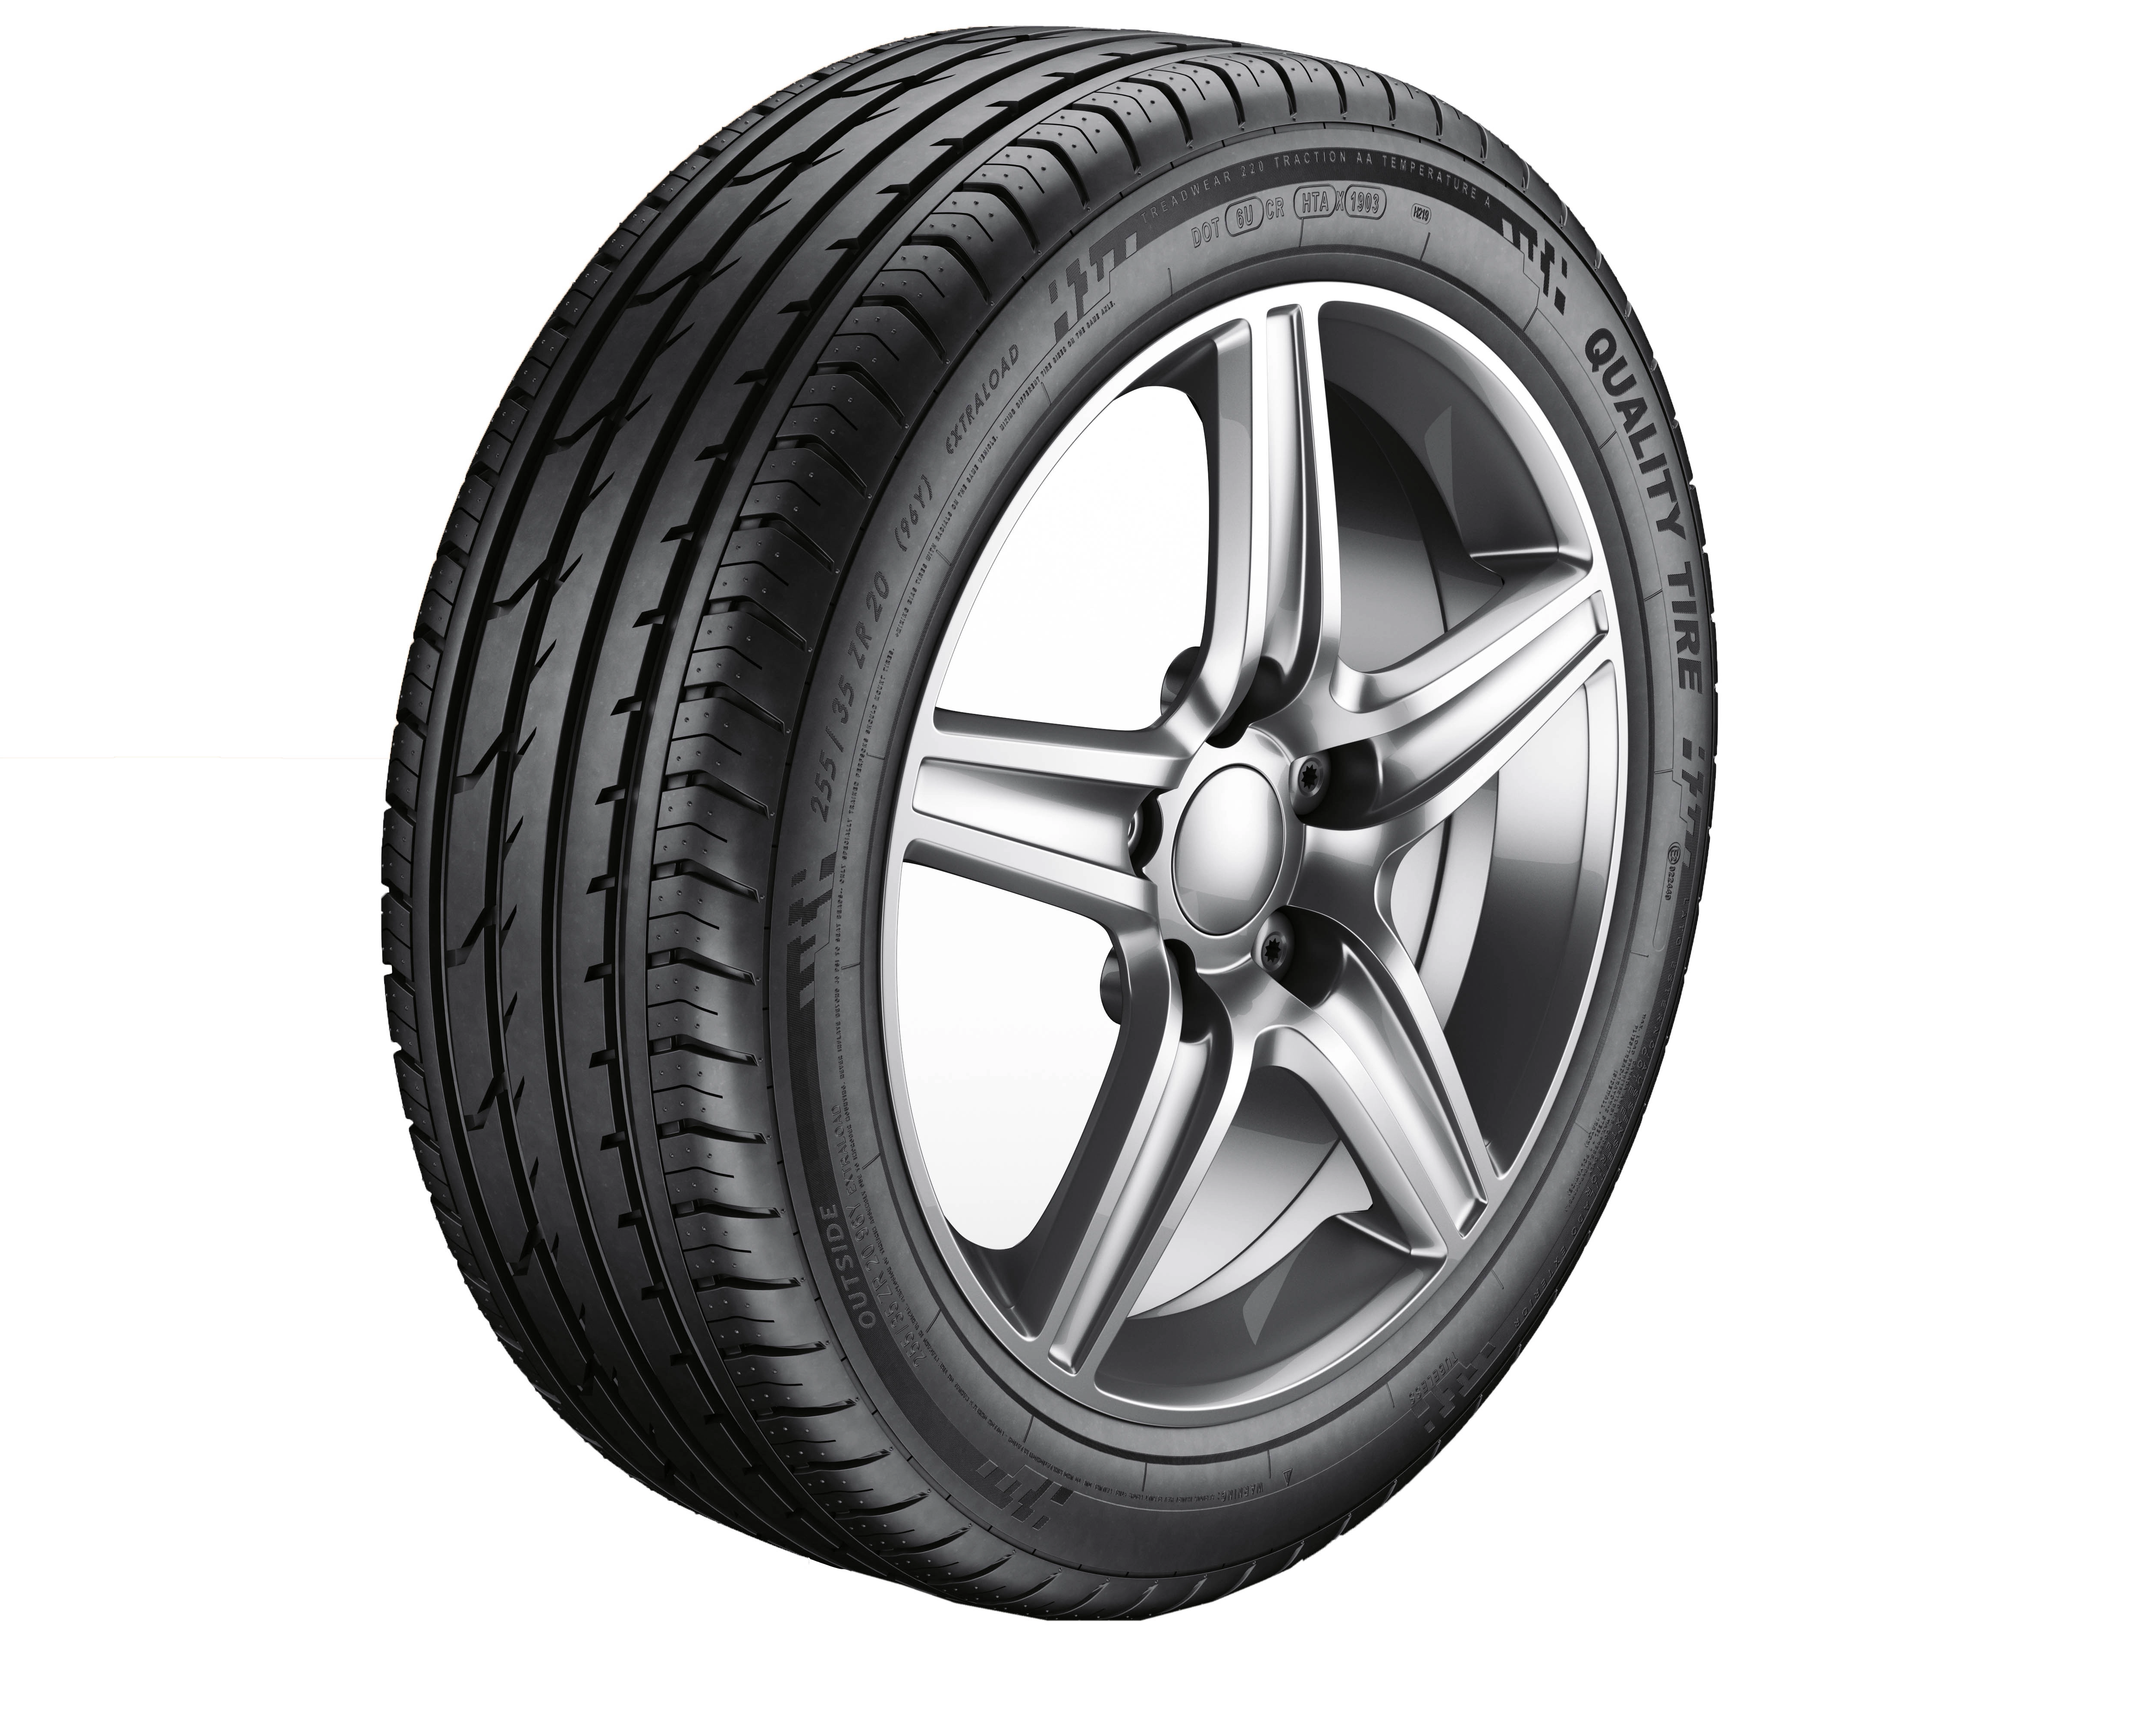 202-tire-15820524477959.jpg